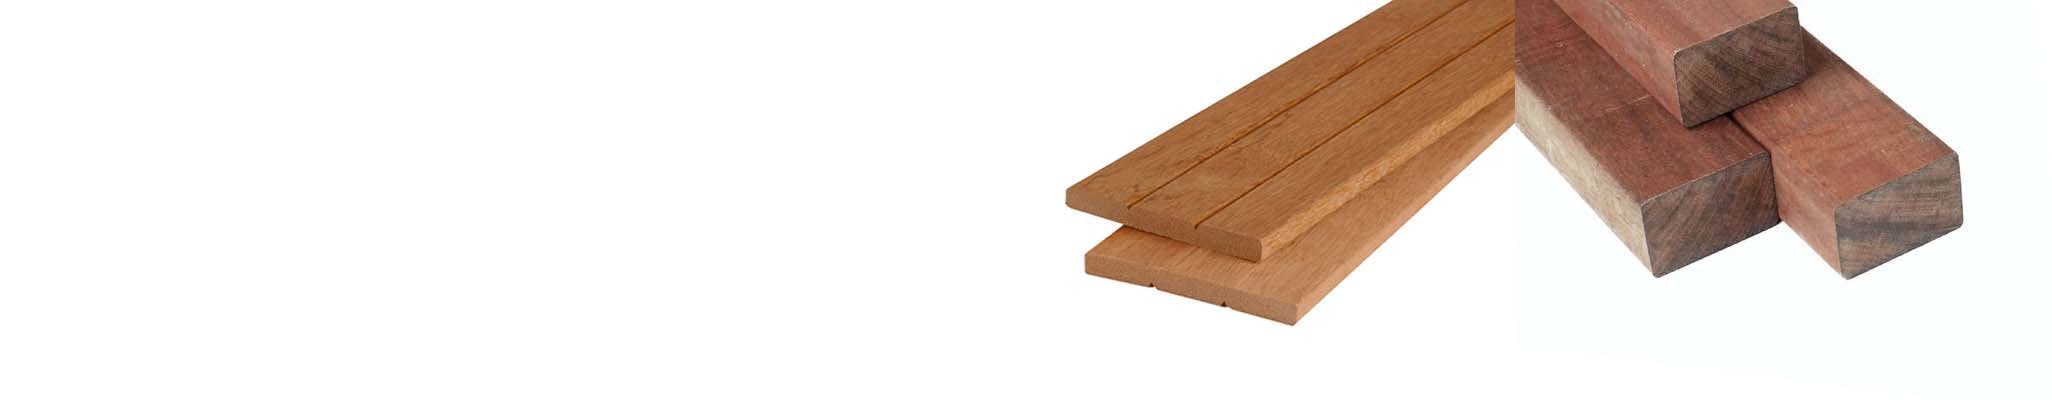 Hardhout typen planken balken